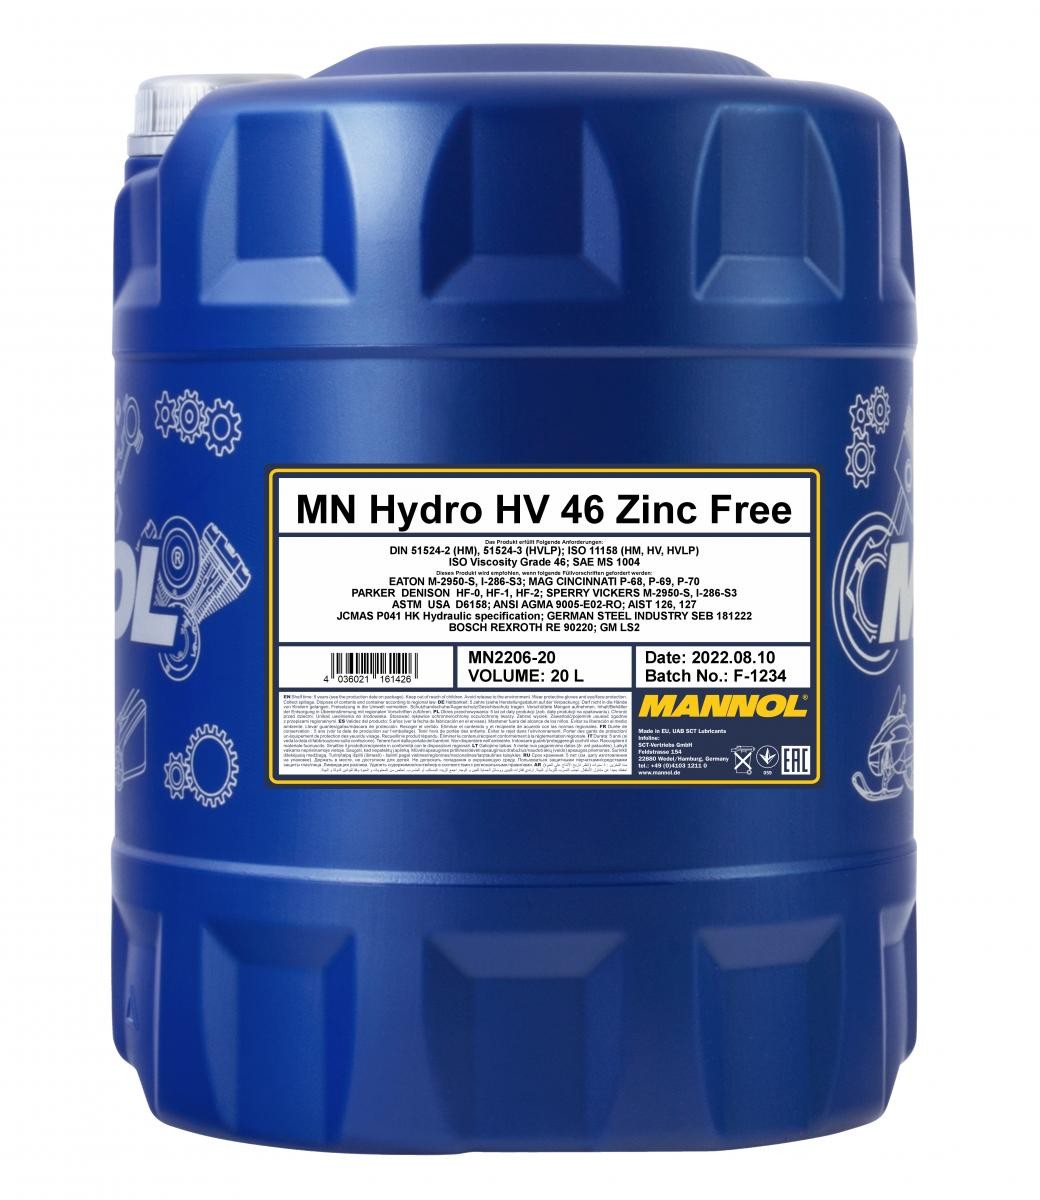 MANNOL Hydro HV ISO 46, Zinc Free Central Hydraulic Oil MN2206-20 buy